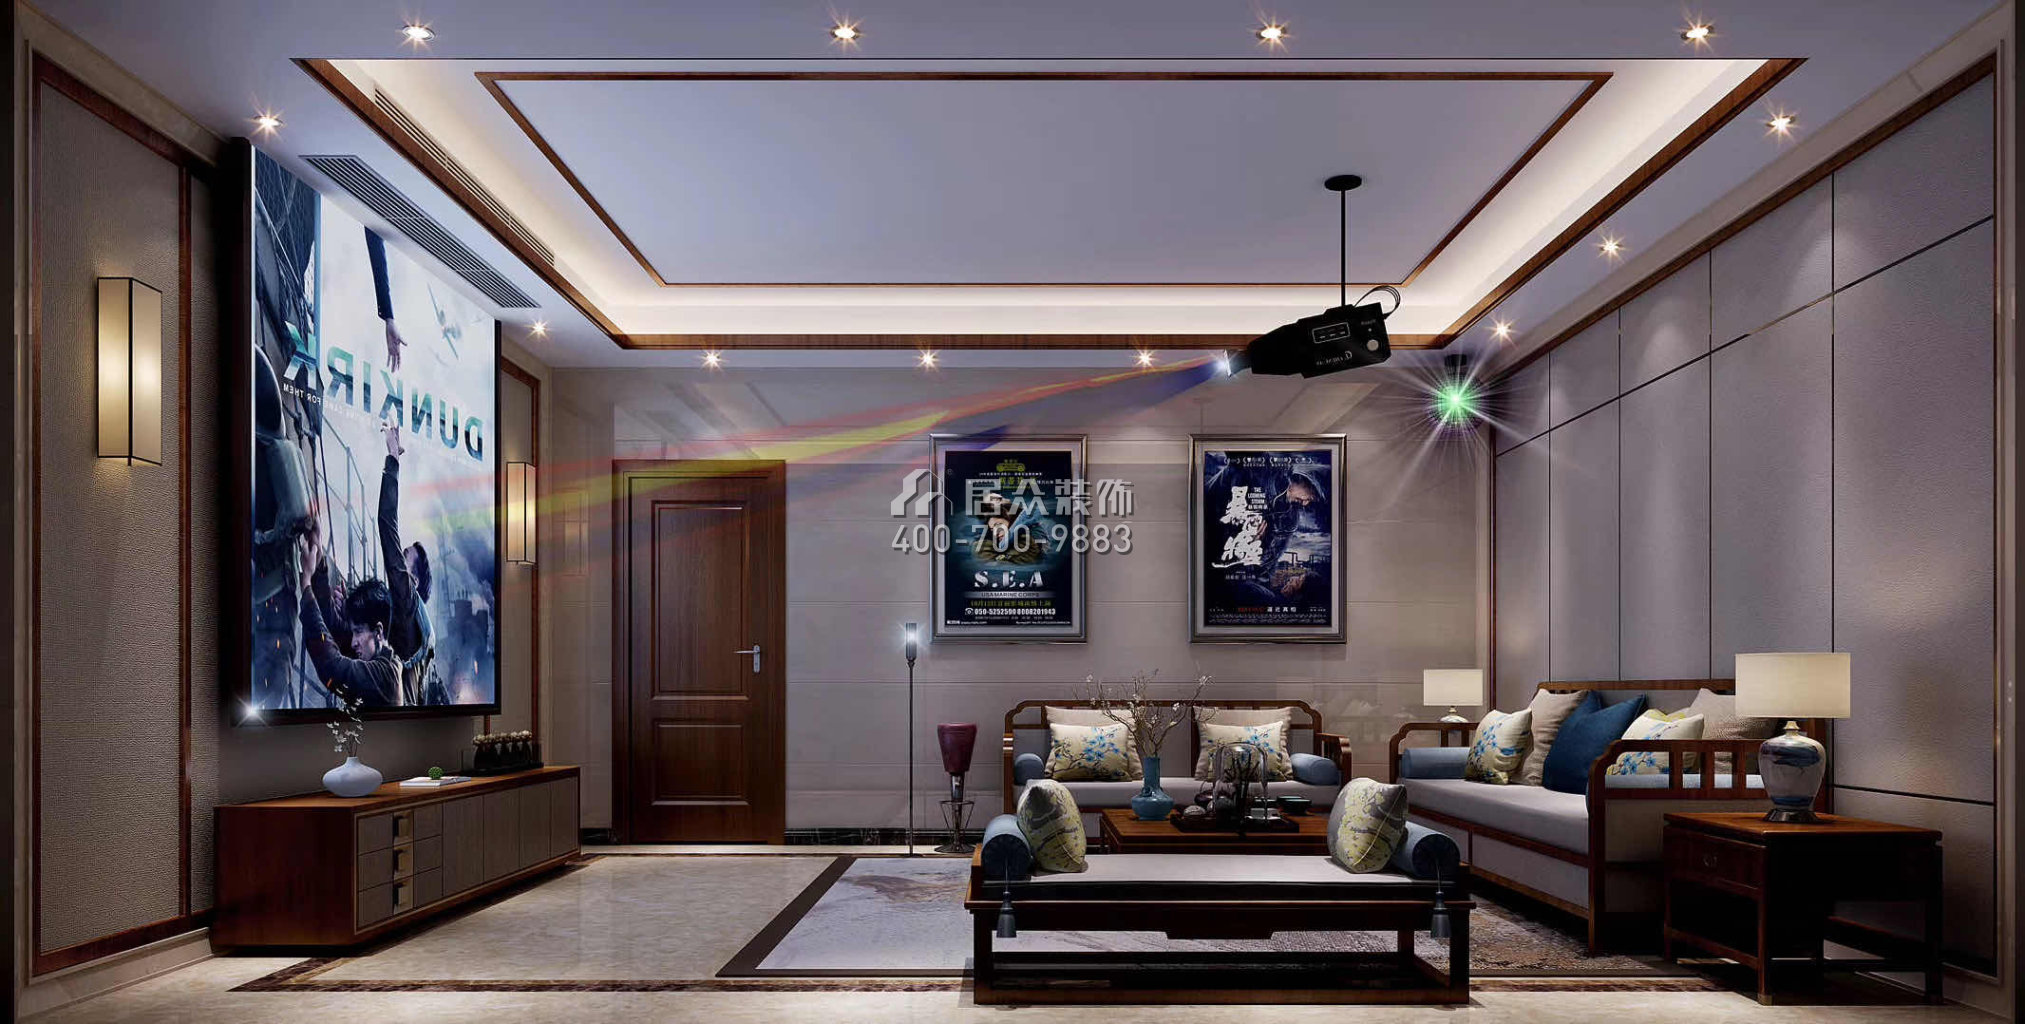 华桂园330平方米中式风格别墅户型家庭影院装修效果图